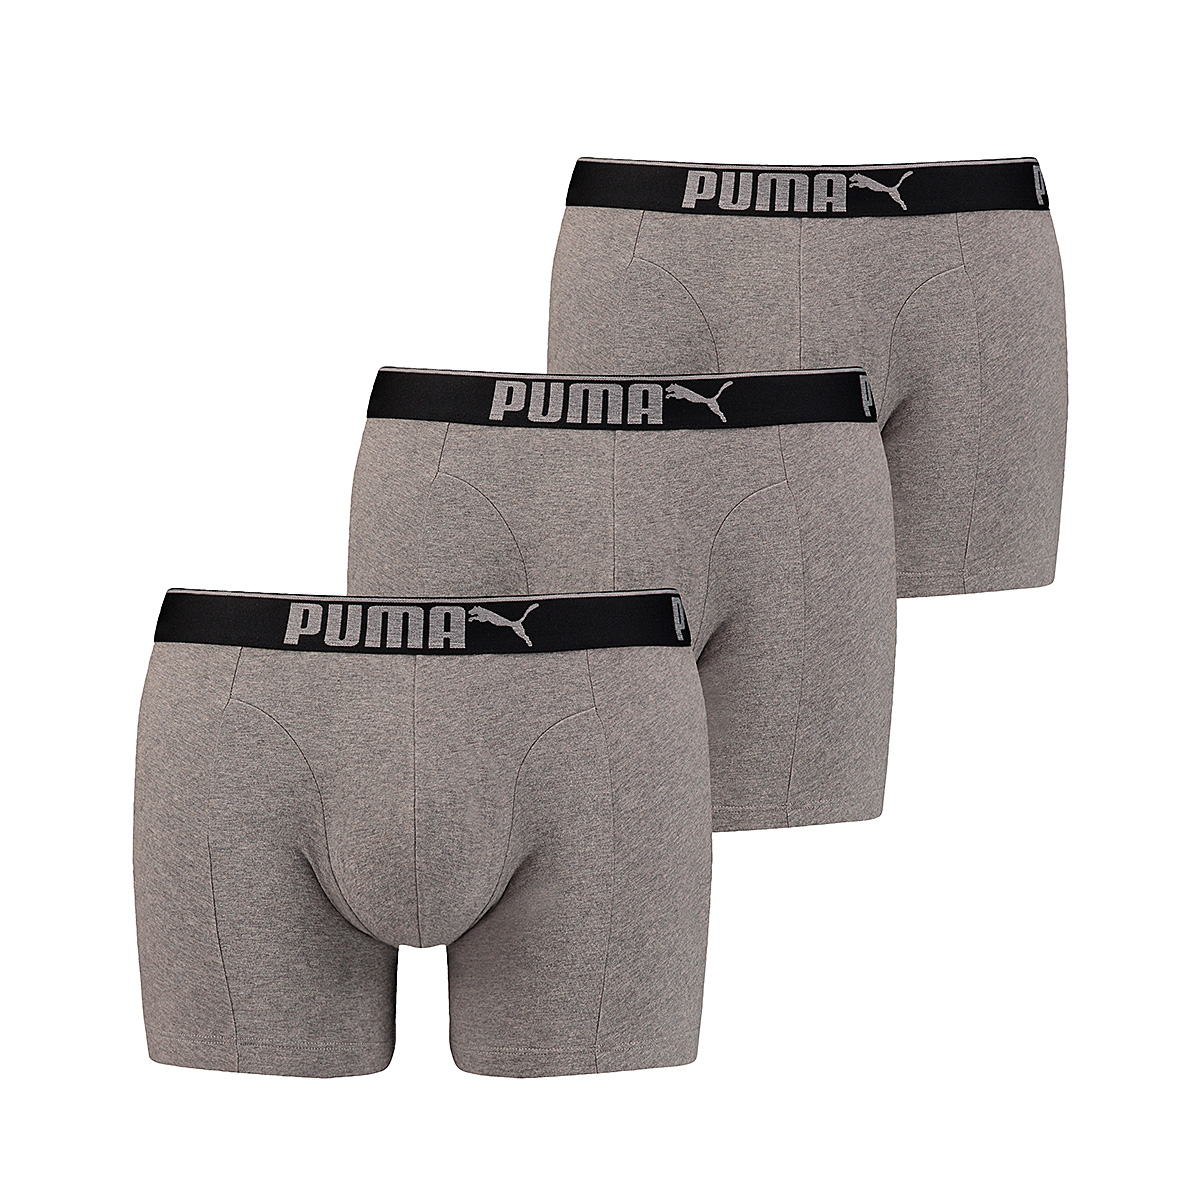 Puma Herren Boxershort Lifestyle Sueded Cotton 3 er Pack